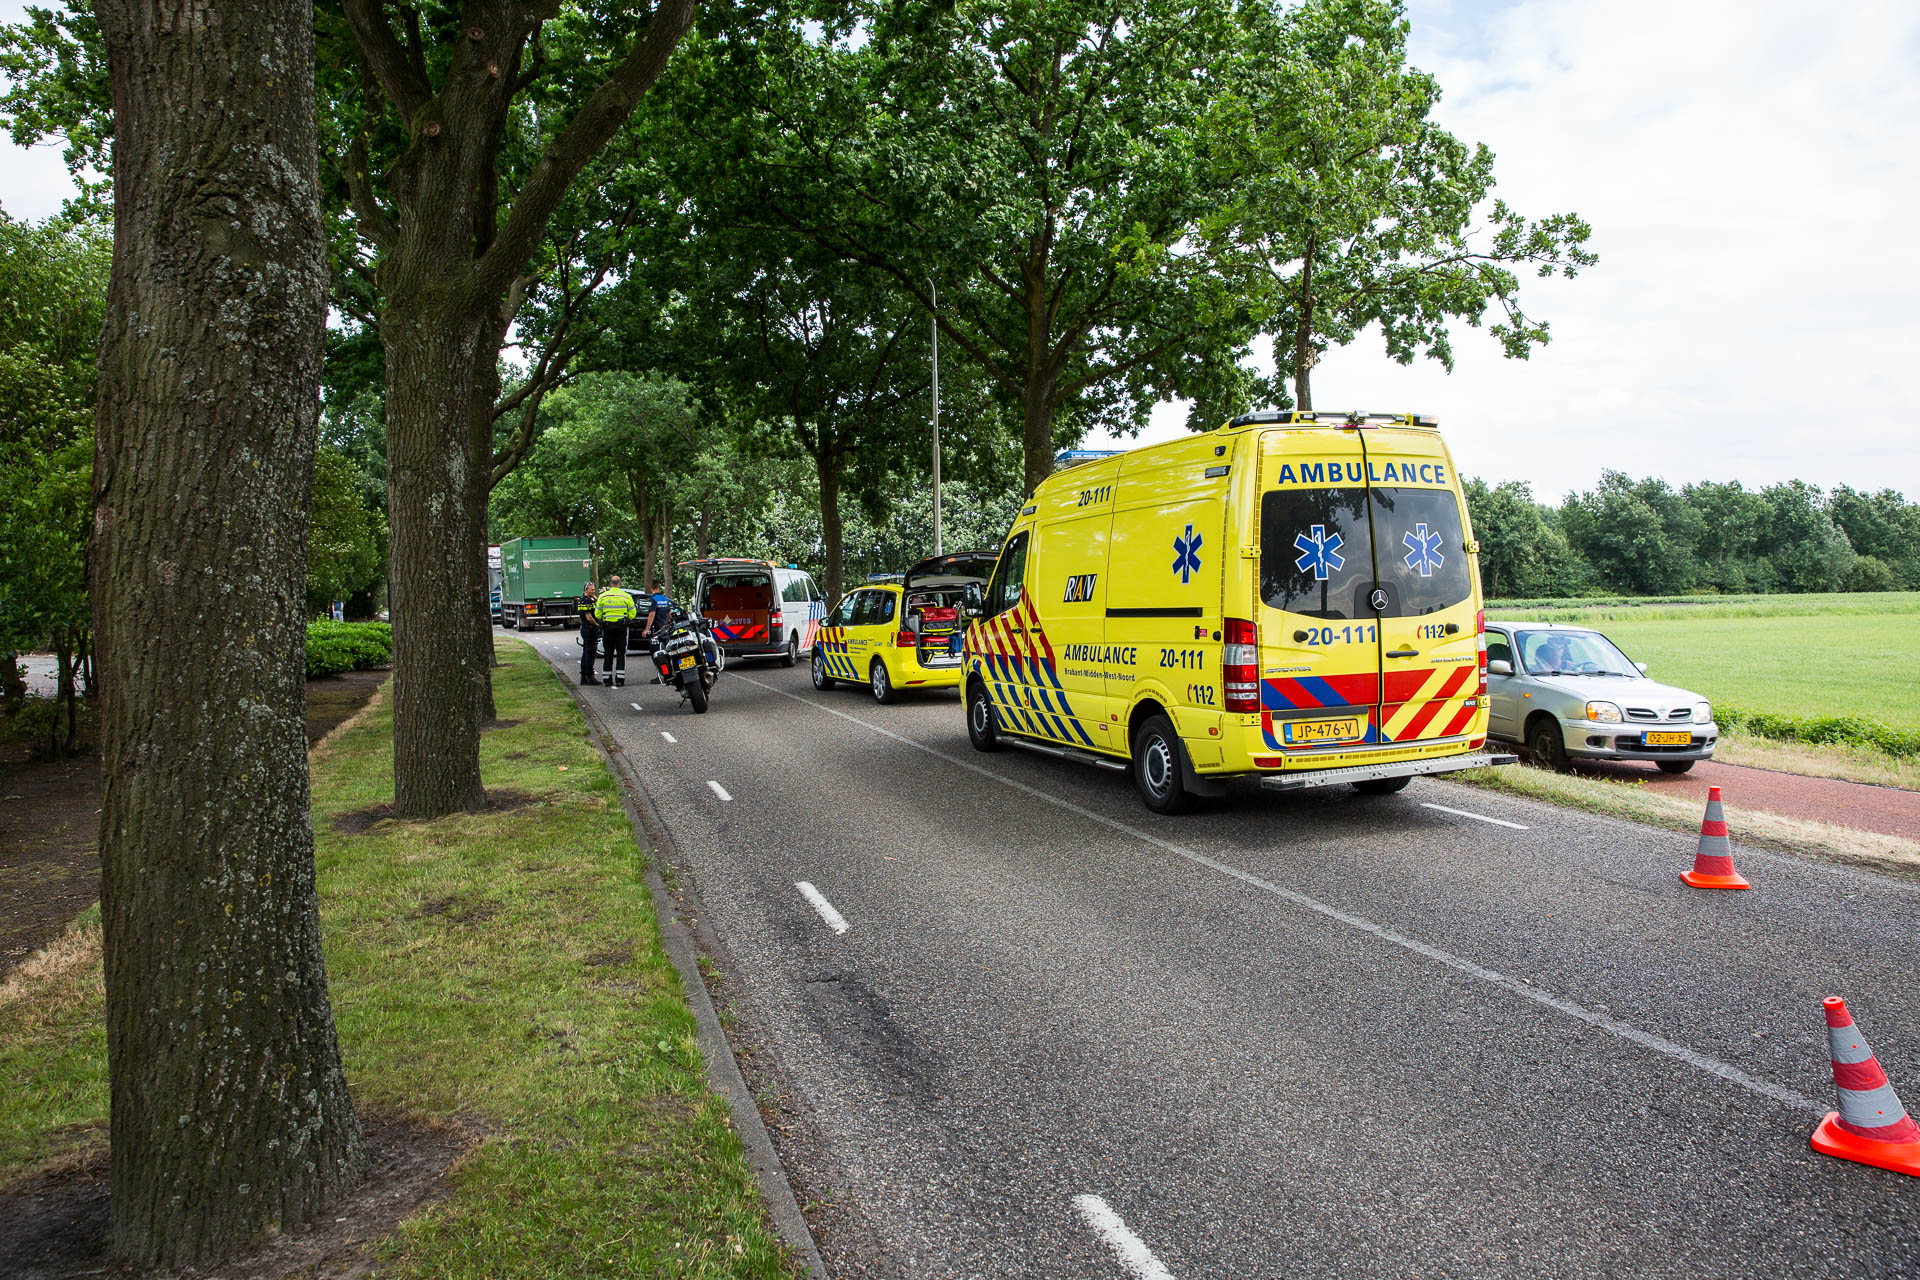  Twee gewonden bij ongeval aan Rucphensebaan in Roosendaal